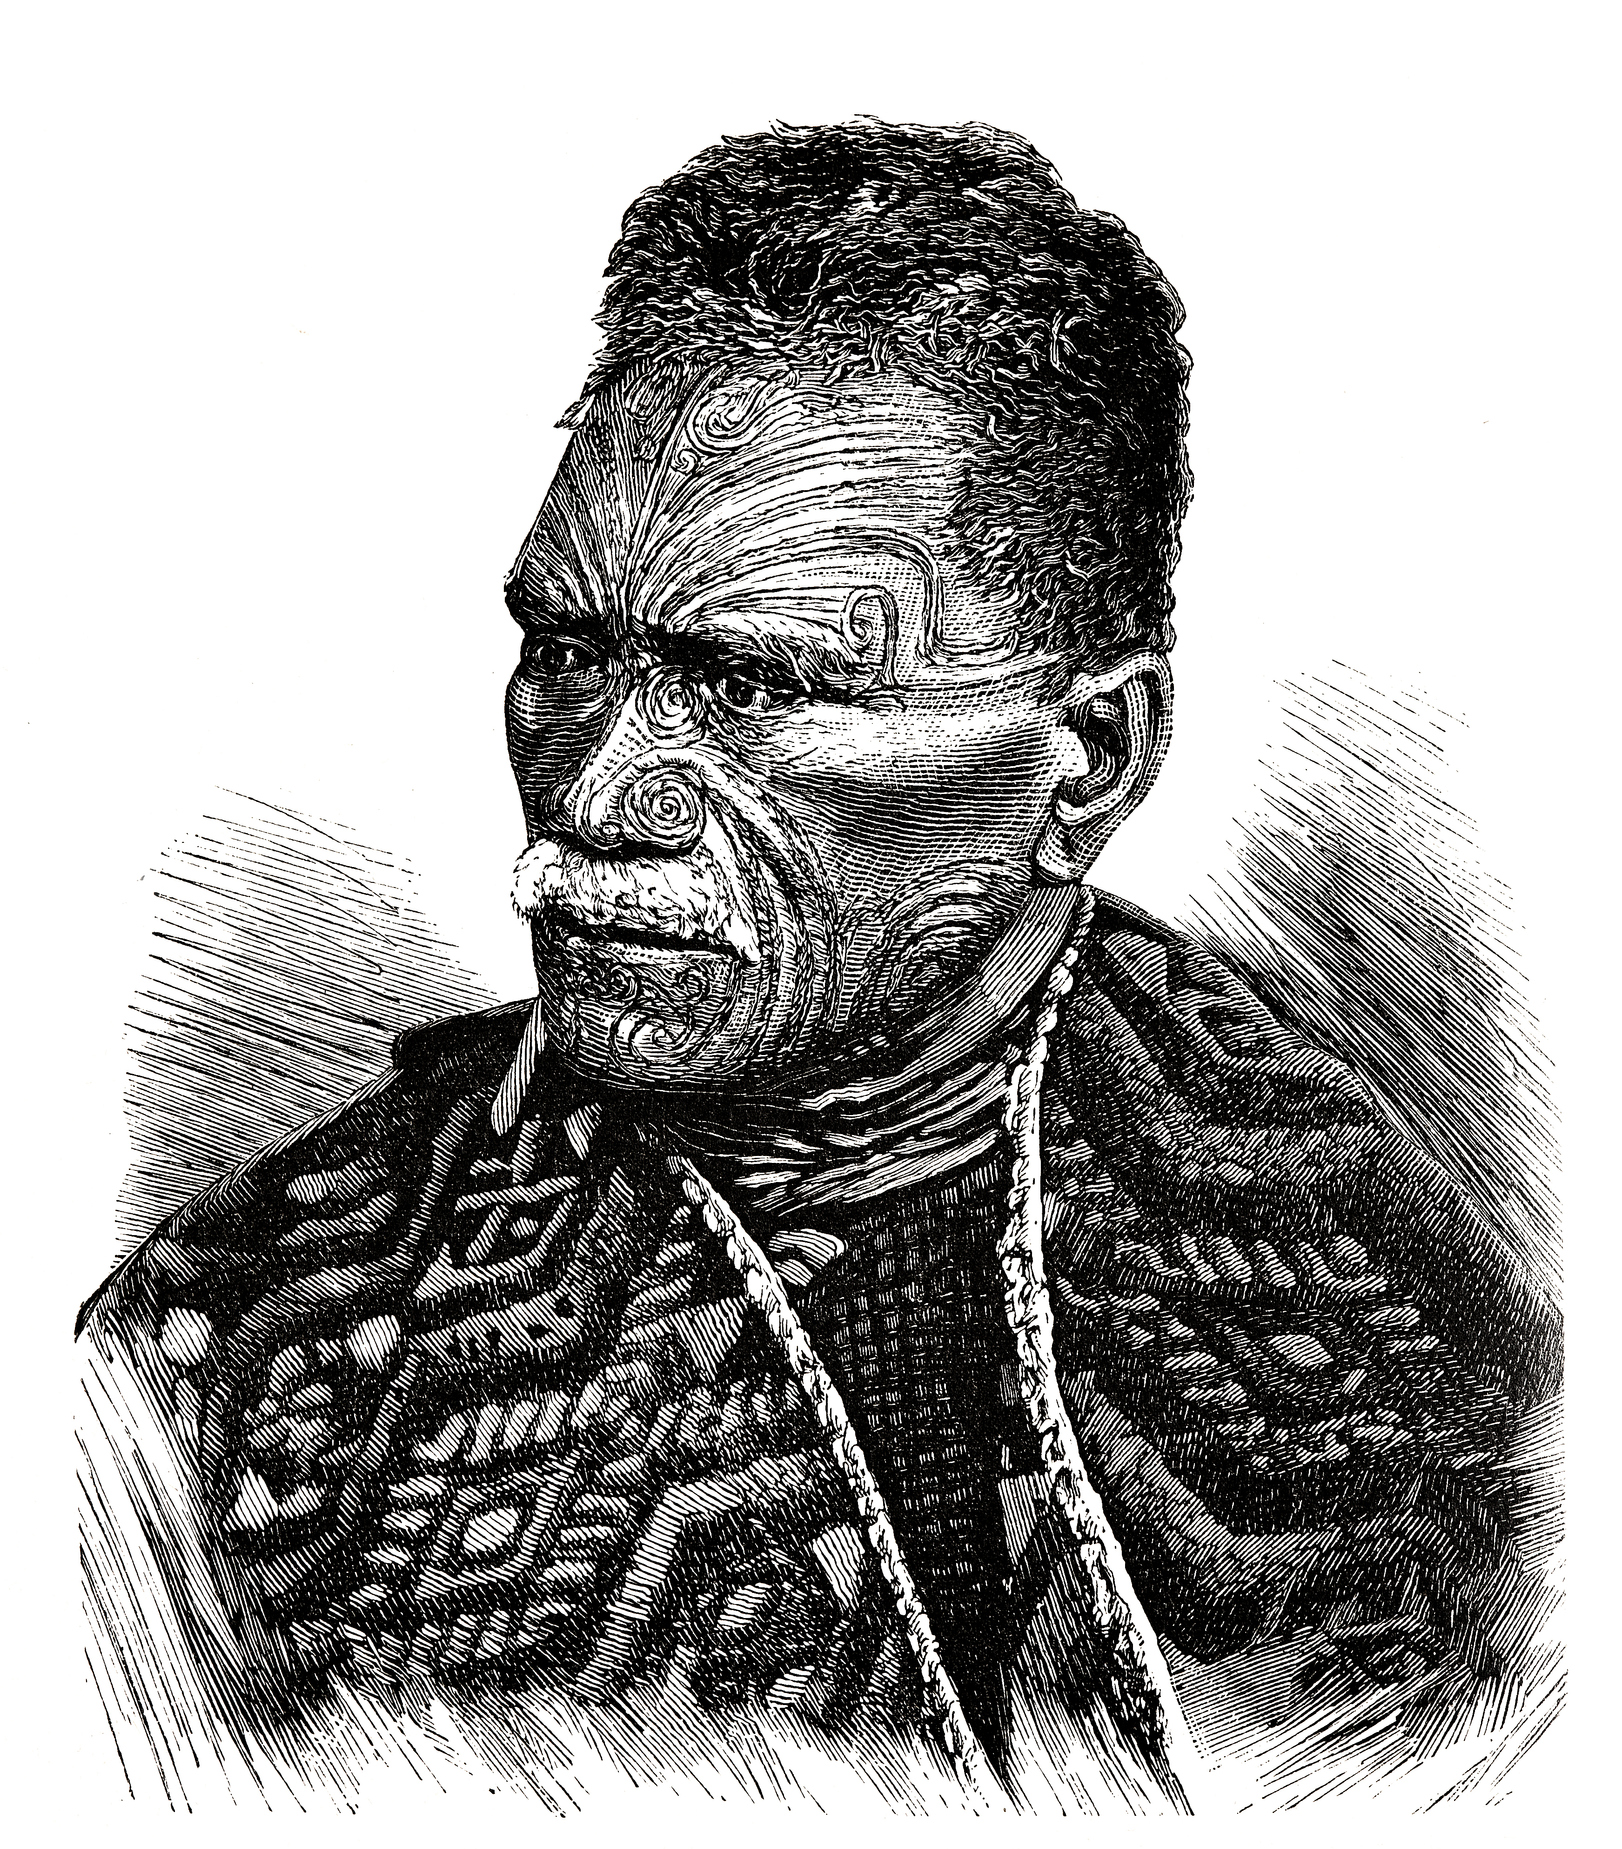 <p><strong>Татуировки в Самоа</strong></p>

<p>Татуирането е част от културните традиции на Самоа от хиляди години. И дори се смята, че думата &quot;татуировка&quot; произлиза от самоанската дума tatau. Техниките и инструментите, използвани за тази традиционна практика, почти не са се променили, а уменията се предават от баща на син. Церемониите по татуиране обикновено се провеждат, за да отбележат издигането на по-млад вожд до лидерска роля в общността.</p>